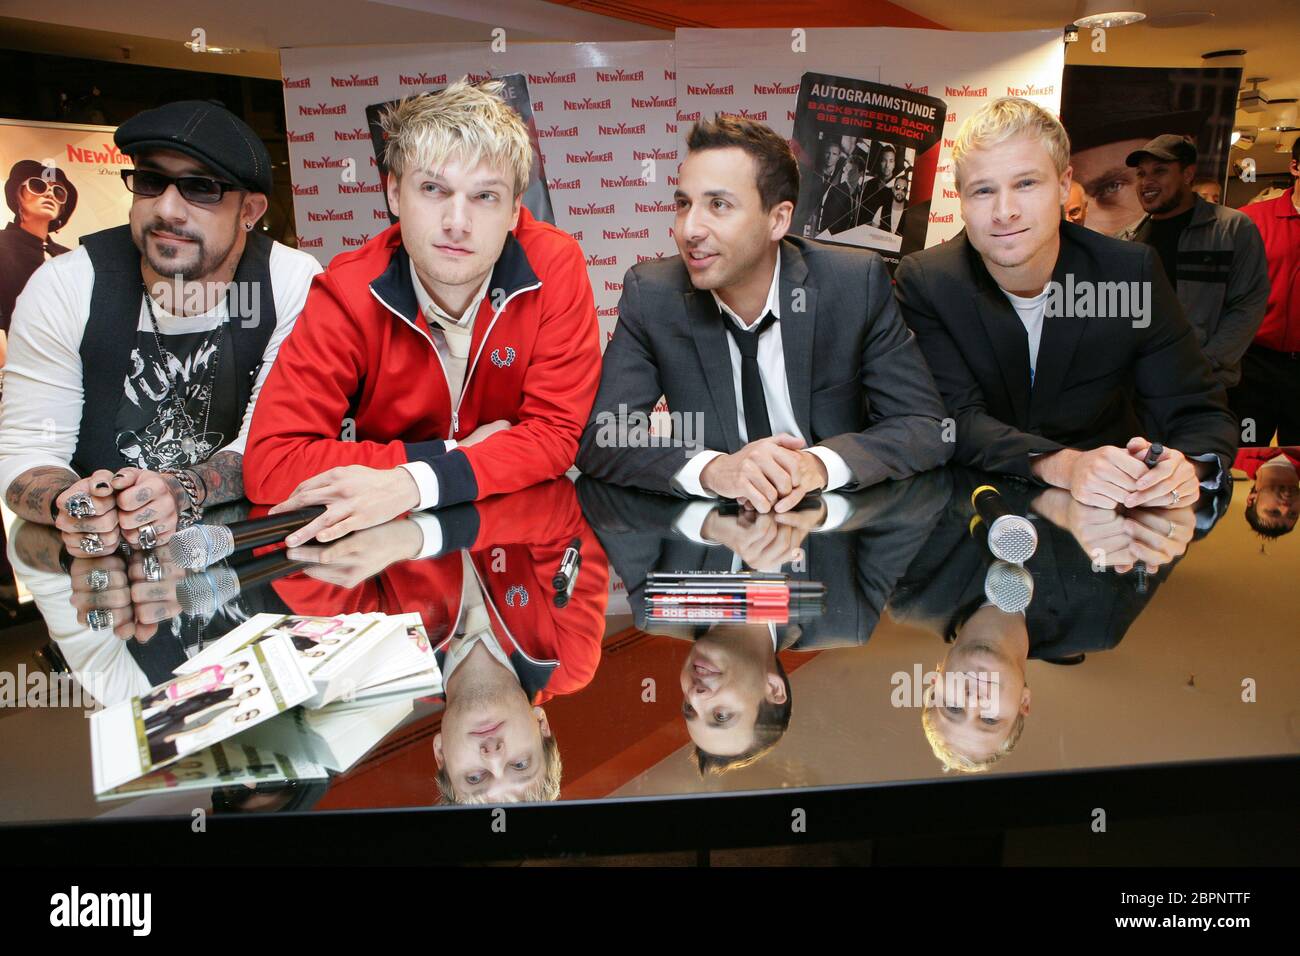 Backstreet Boys - Autogrammstunde - Die US-amerikanische boygroup Backstreet Boys während einer Autogrammstunde bei 'New Yorker' in Köln. (v.n.r.l.) Alexander James McLean, Nick carter, Howie Dorough und Brian Littrell Foto Stock